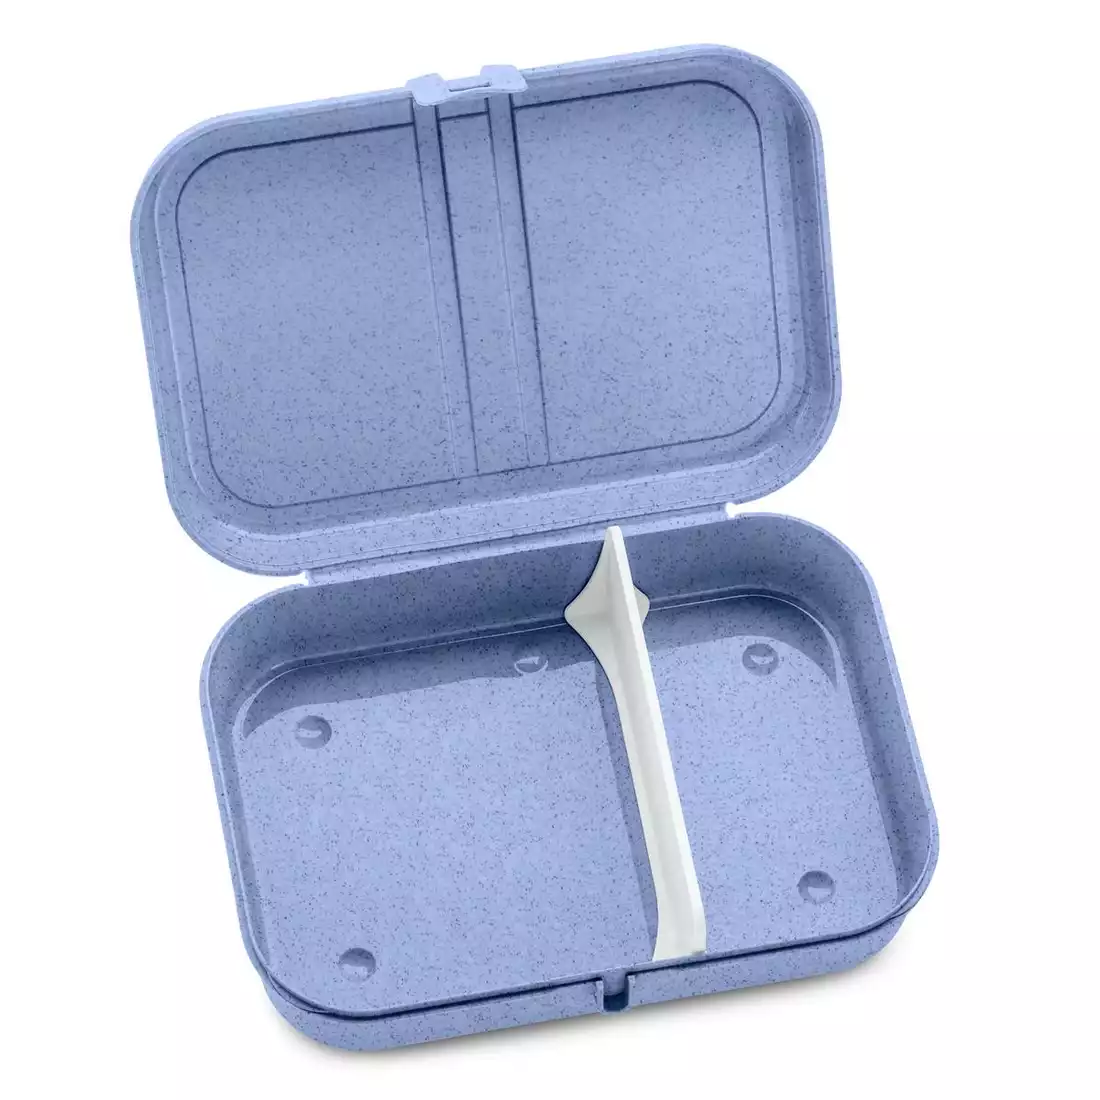 Koziol Pascal L organic lunchbox s oddělovačem, modrý